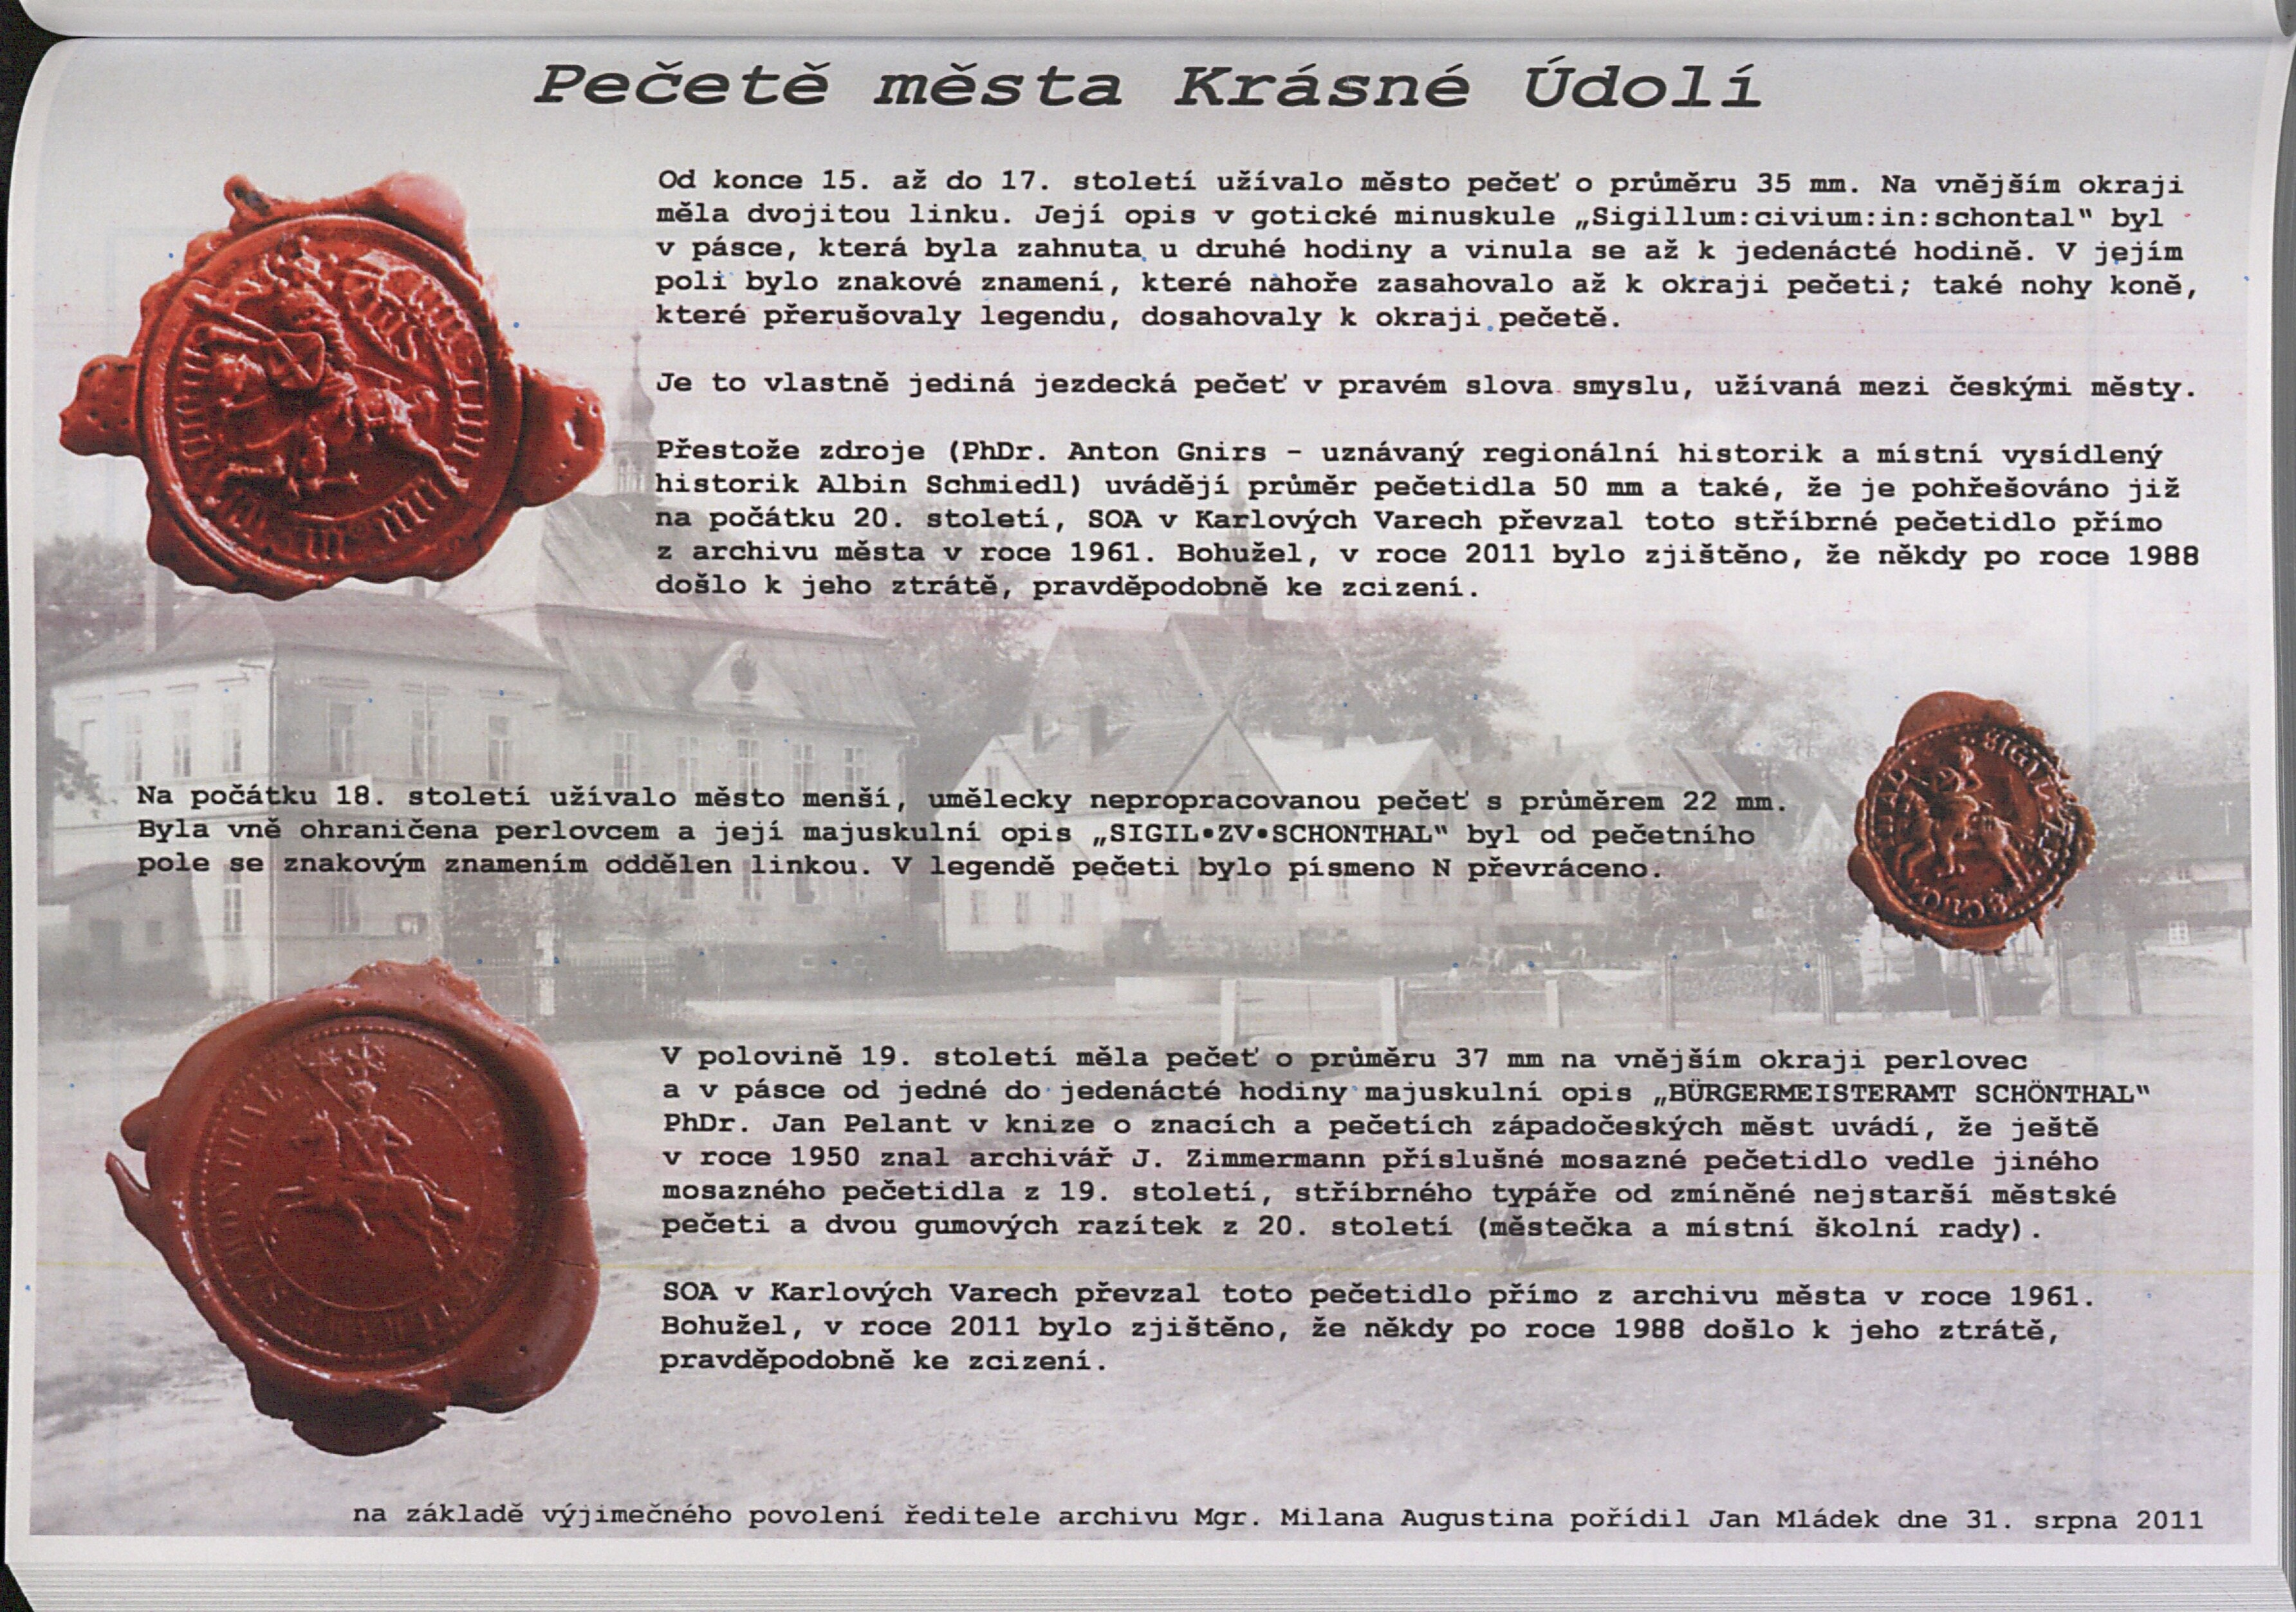 64. soap-kv_01831_mesto-krasne-udoli-2013_0650